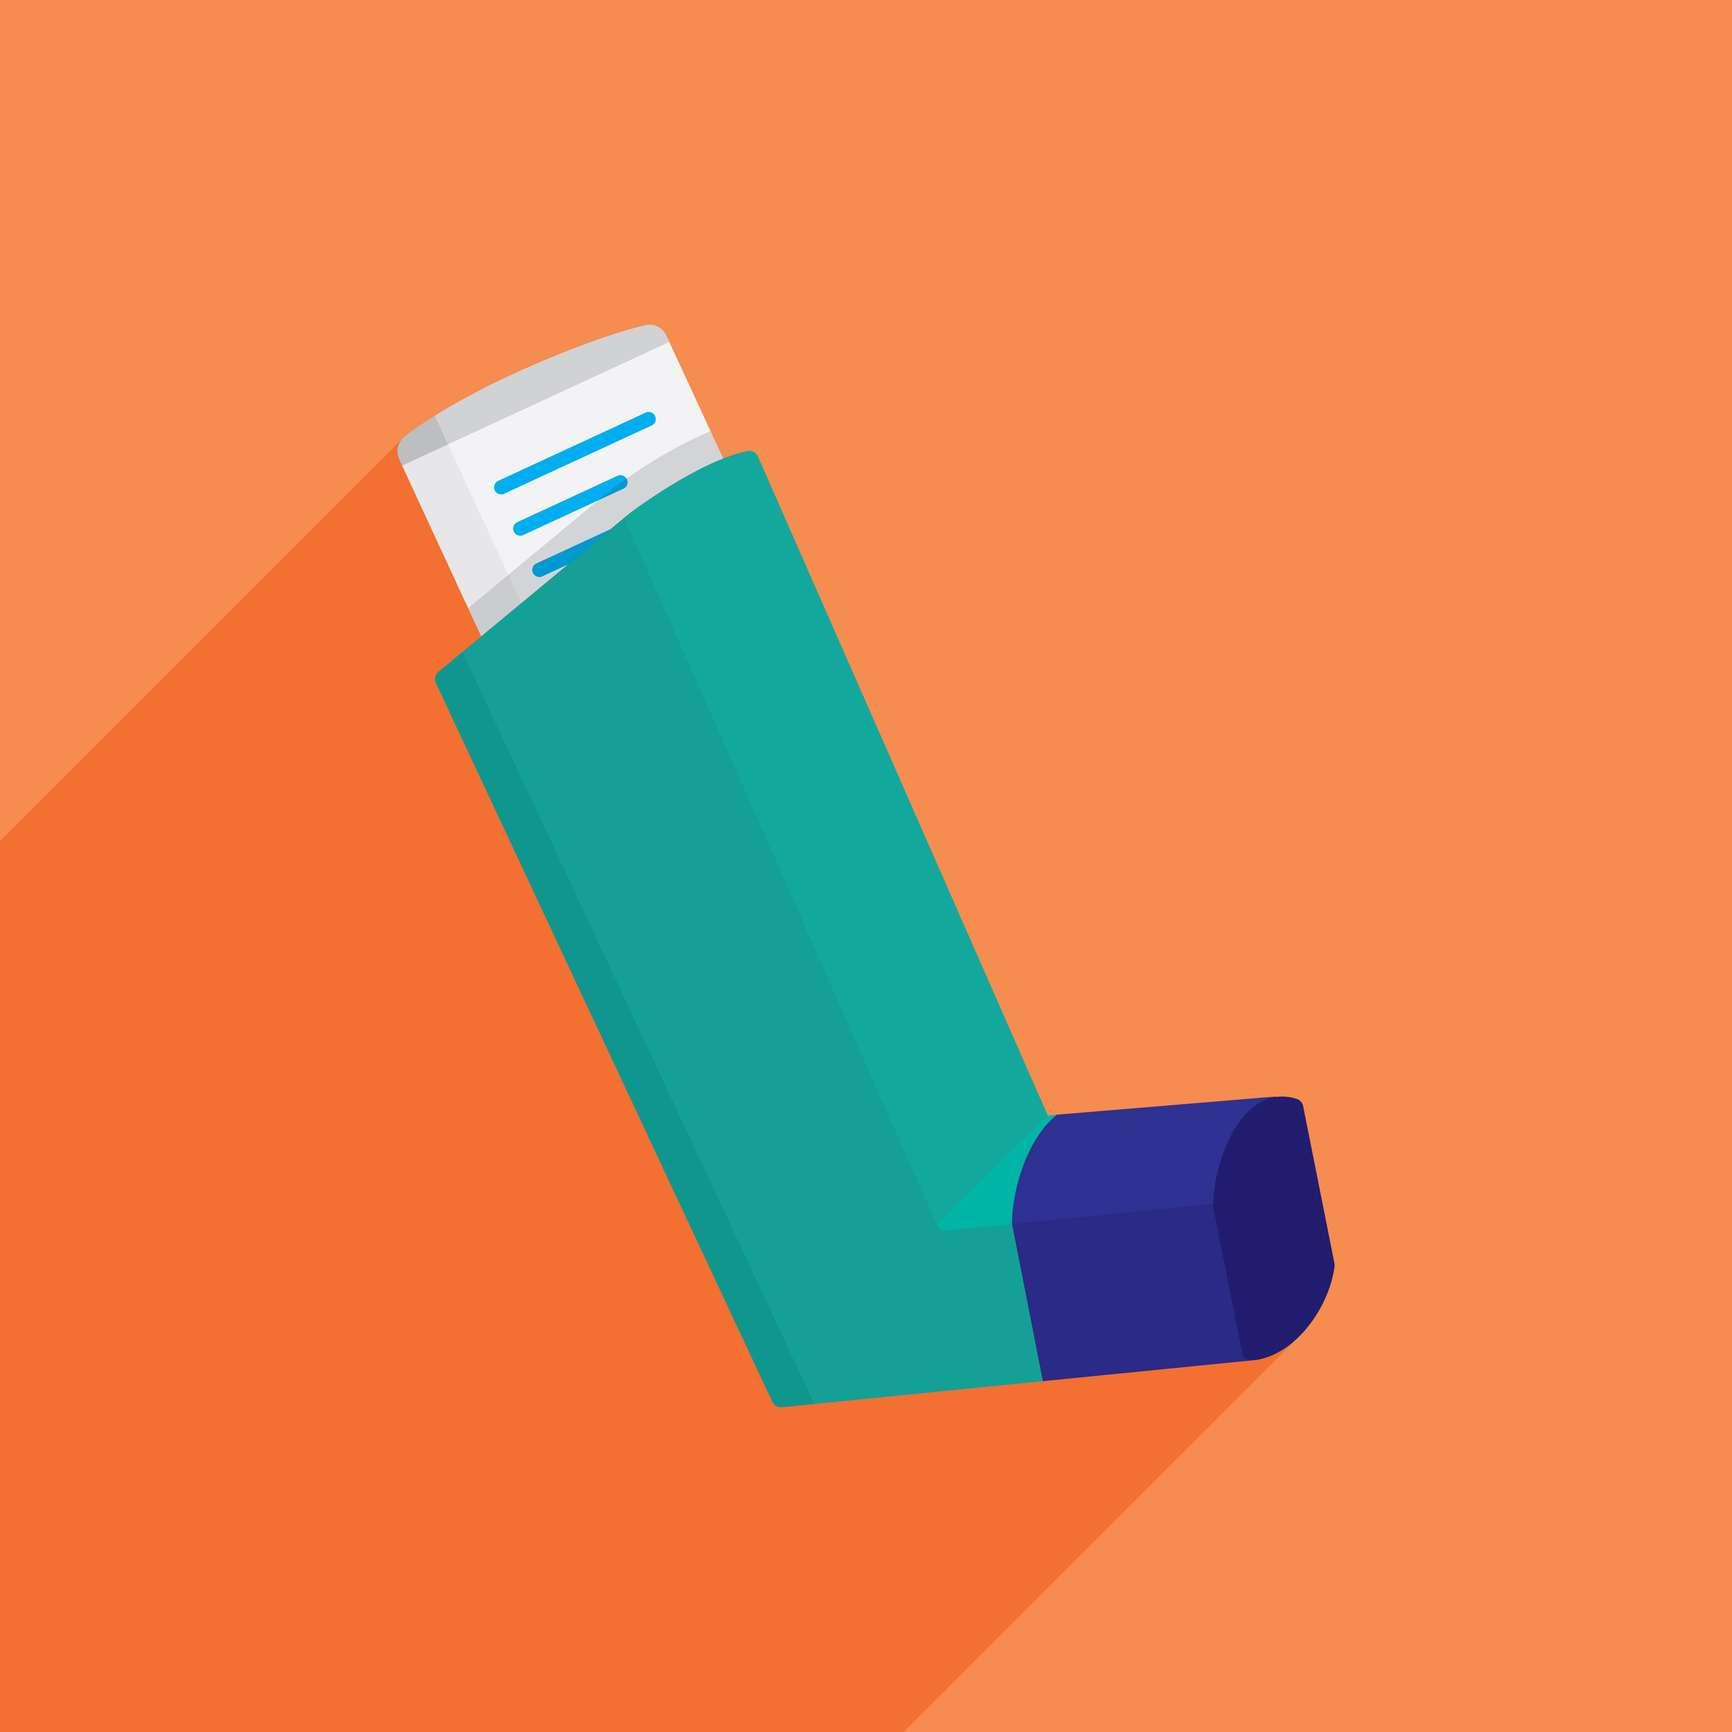 Vektor-Illustration eines Asthma-Inhalators vor einem orangefarbenen Hintergrund im flachen Stil.